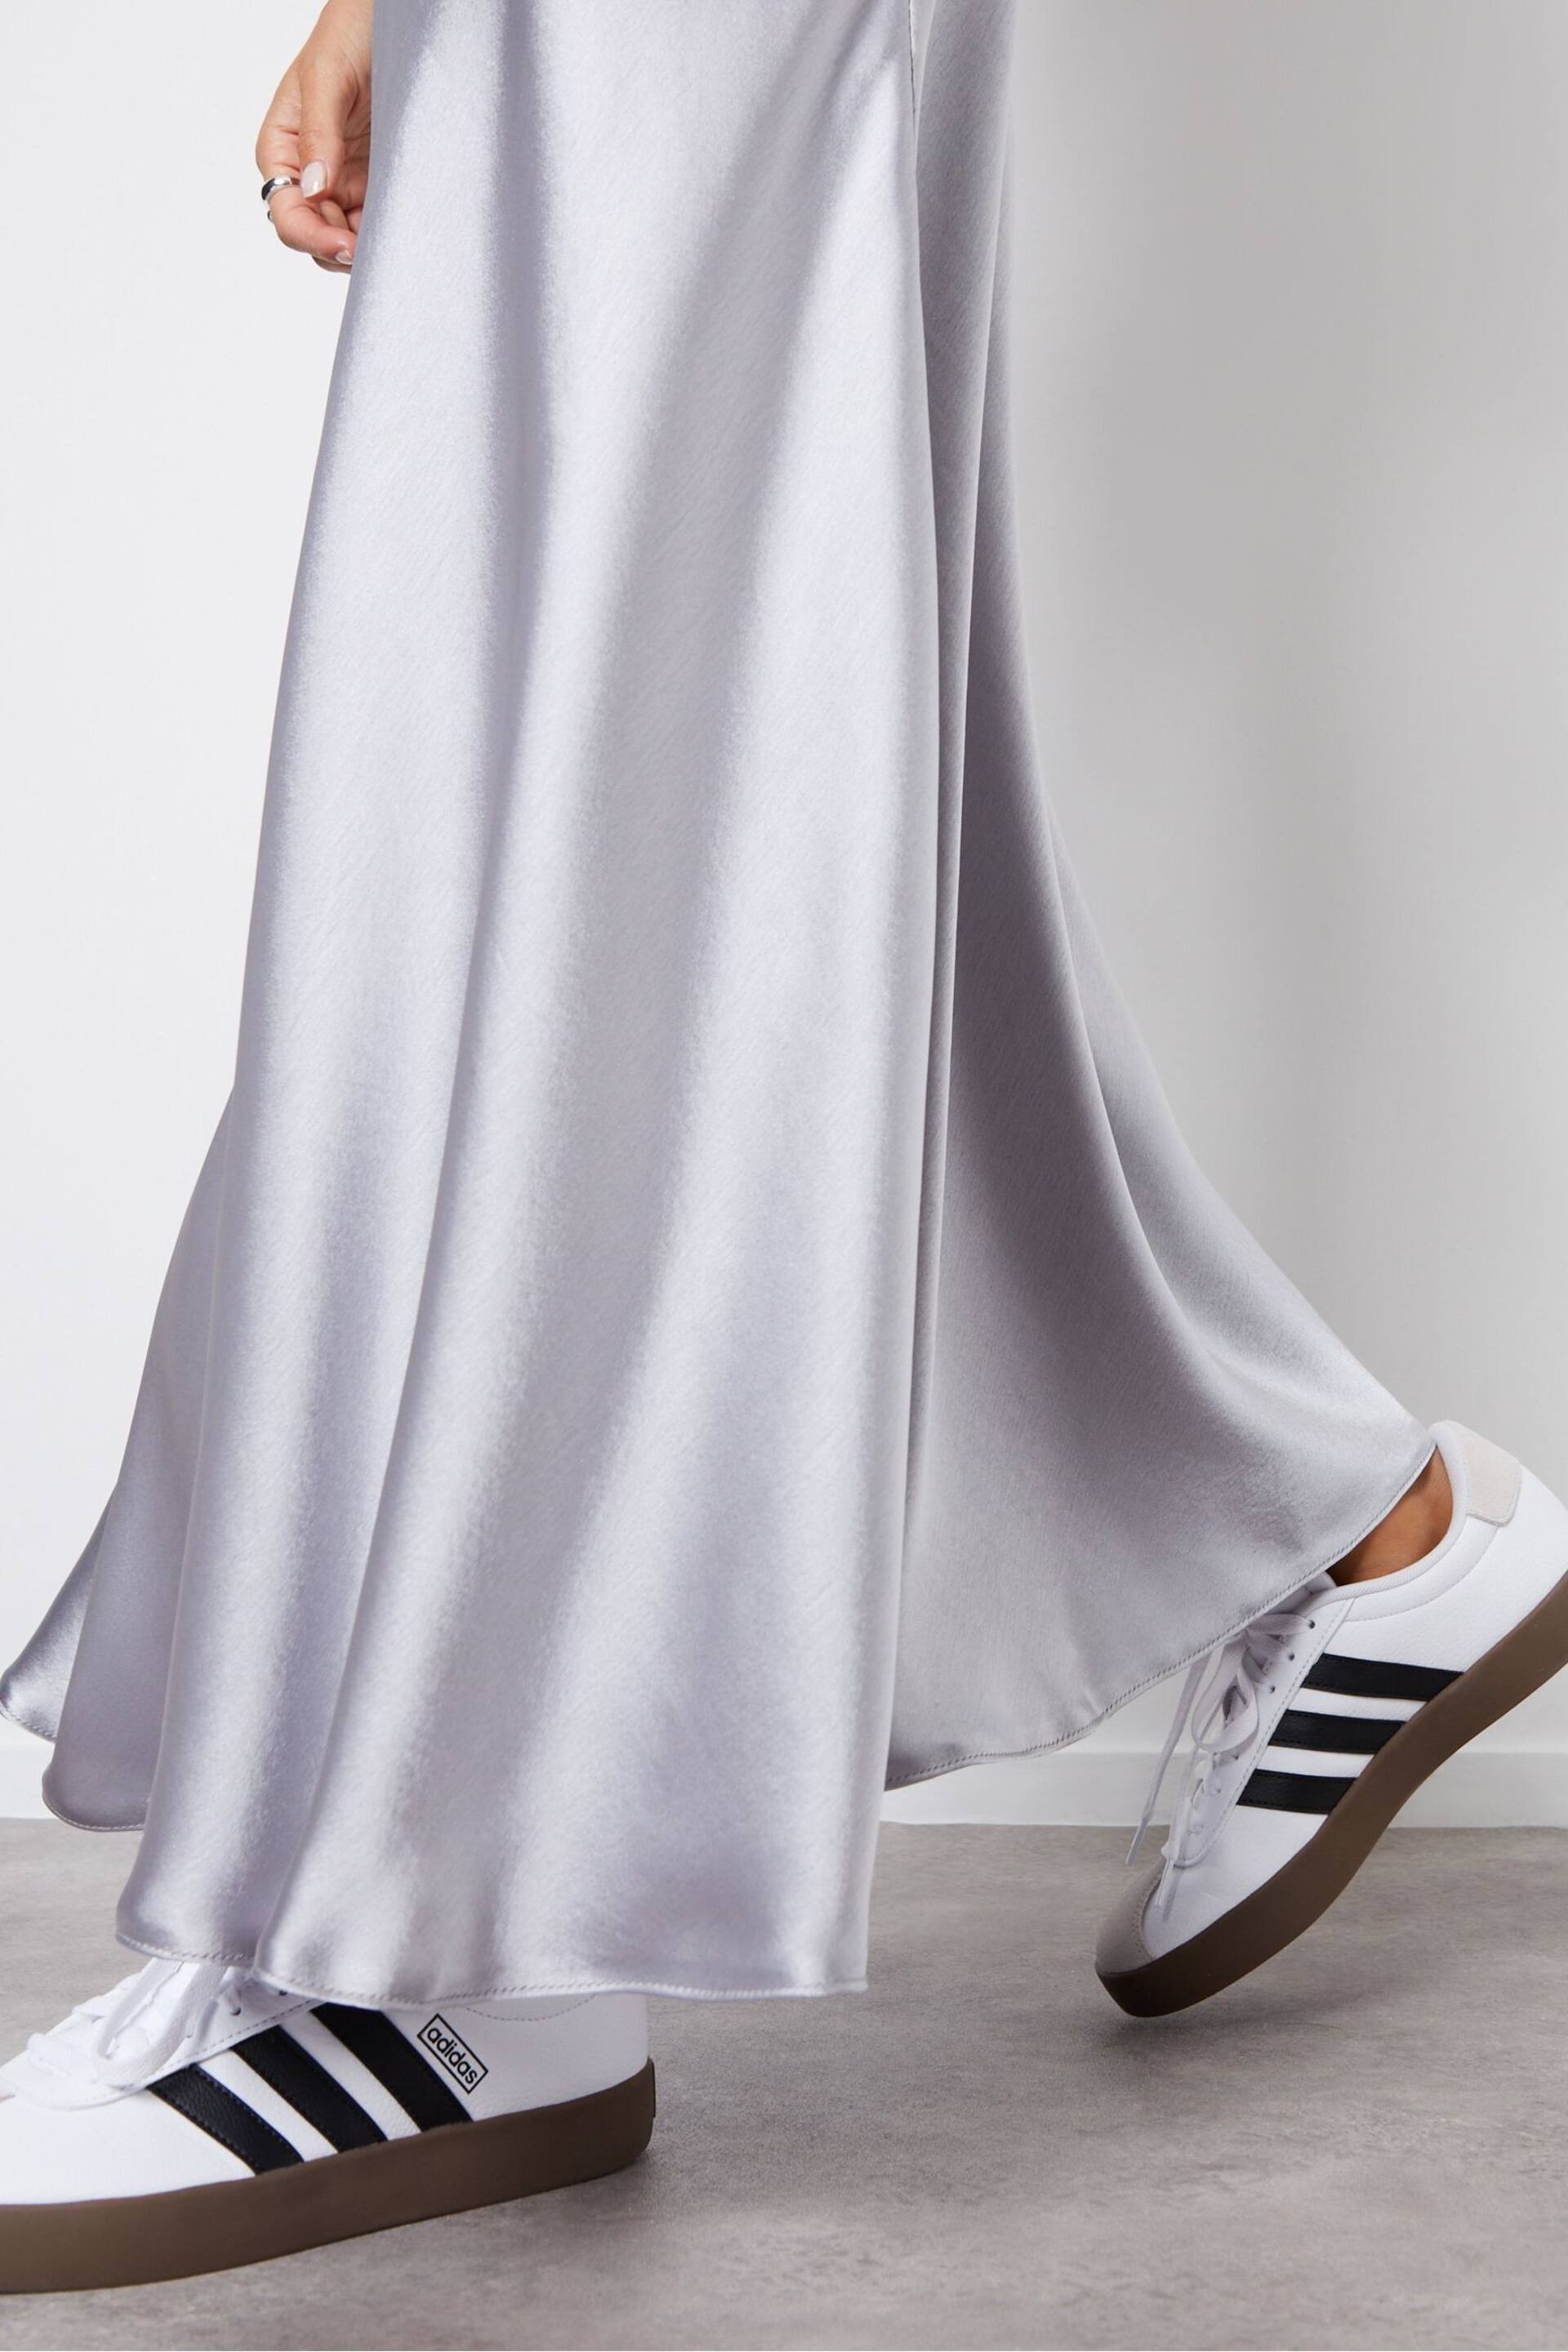 Threadbare Silver Satin Maxi Slip Skirt - Image 5 of 5